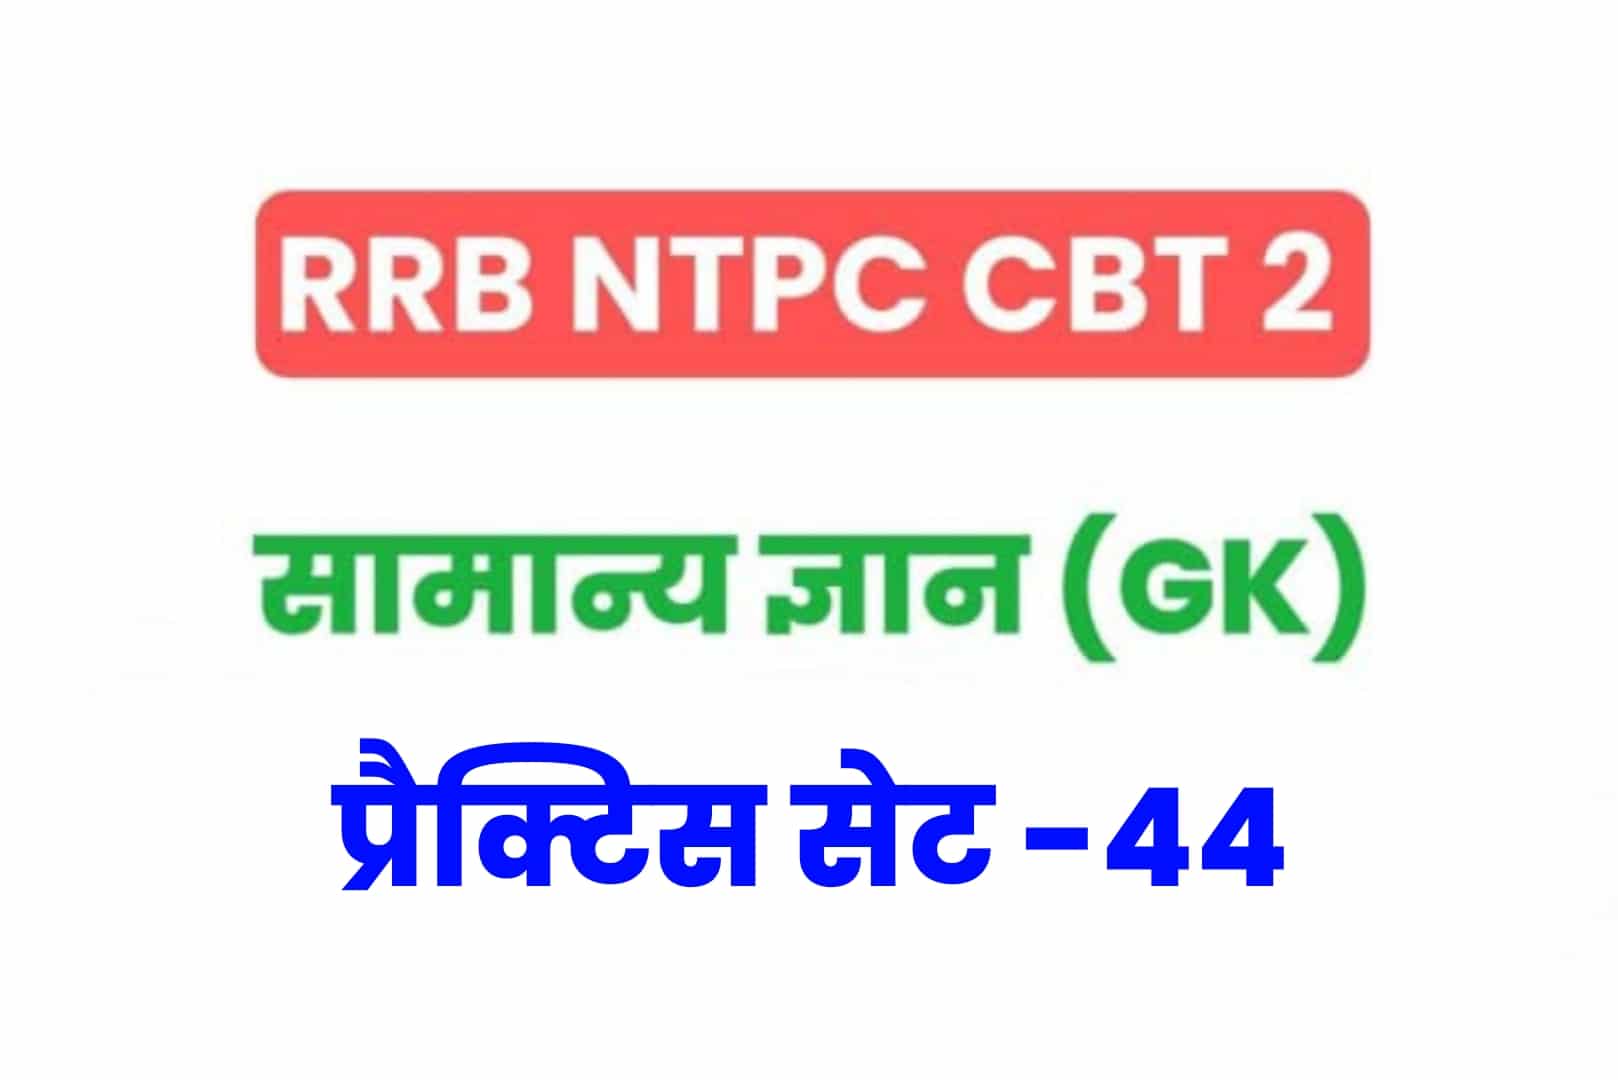 RRB NTPC CBT 2 GK प्रैक्टिस सेट 44: परीक्षा में अच्छे परिणाम के लिए अवश्य पढ़ें सामान्य ज्ञान के 25 मुख्य MCQ